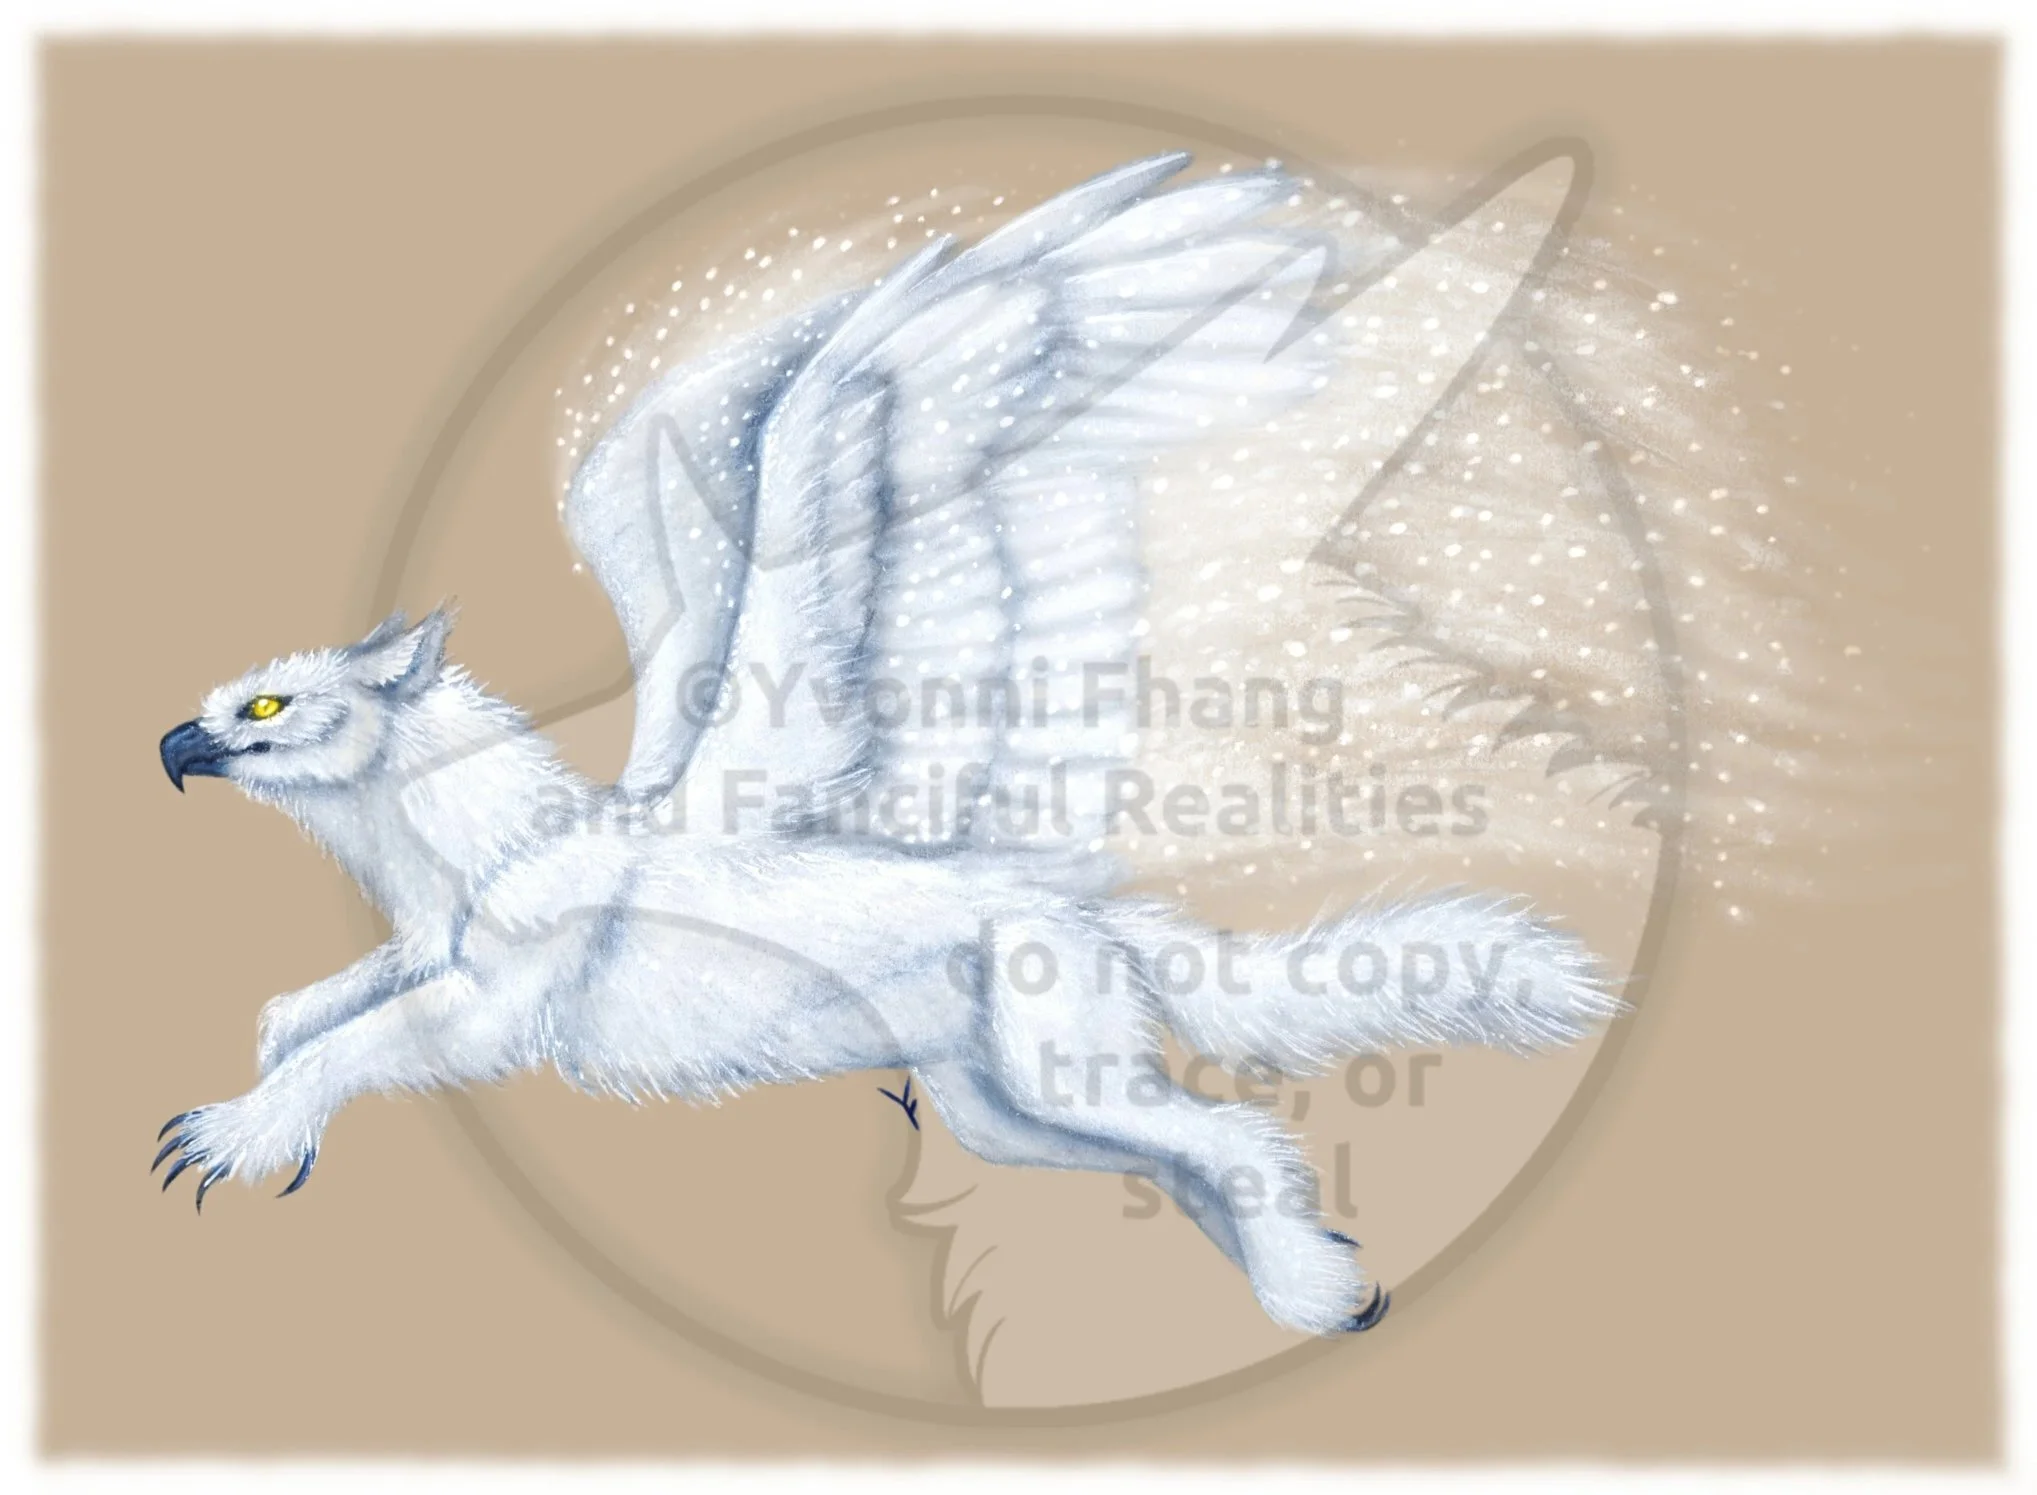 A Snow Gryphon, the mythical hybrid of a rok and an arctic fox.